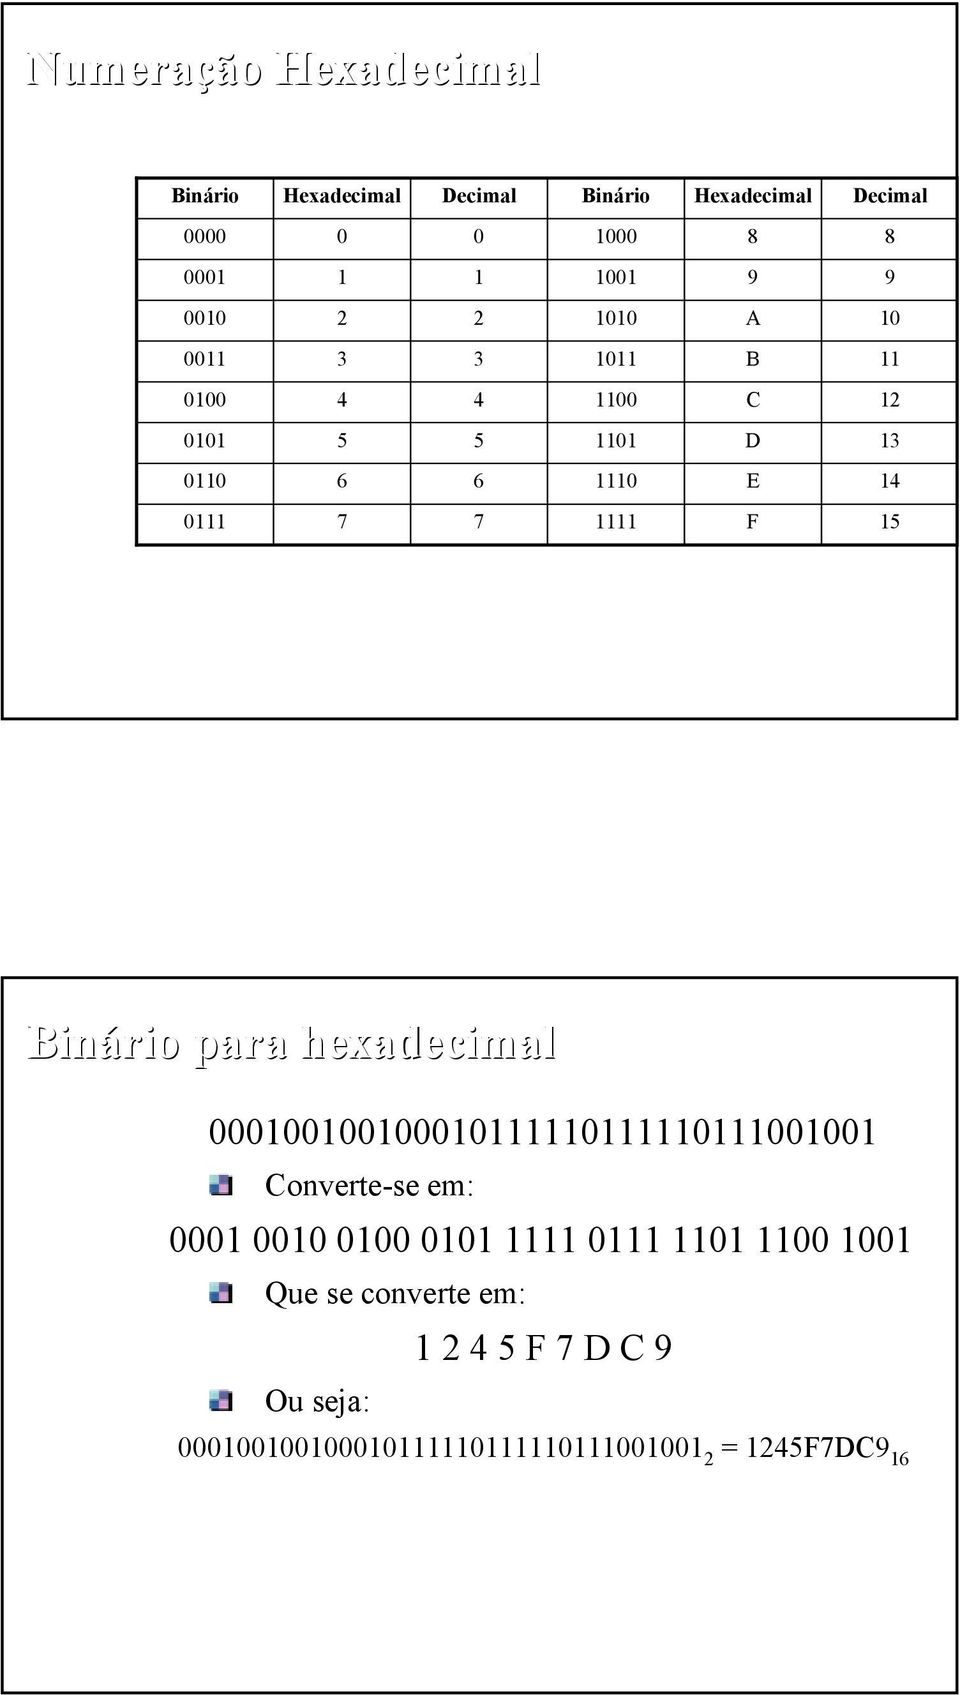 1111 F 15 Binário para hexadecimal 1111111111111111111 Converte-se em: 1 1 1 11 1111 111